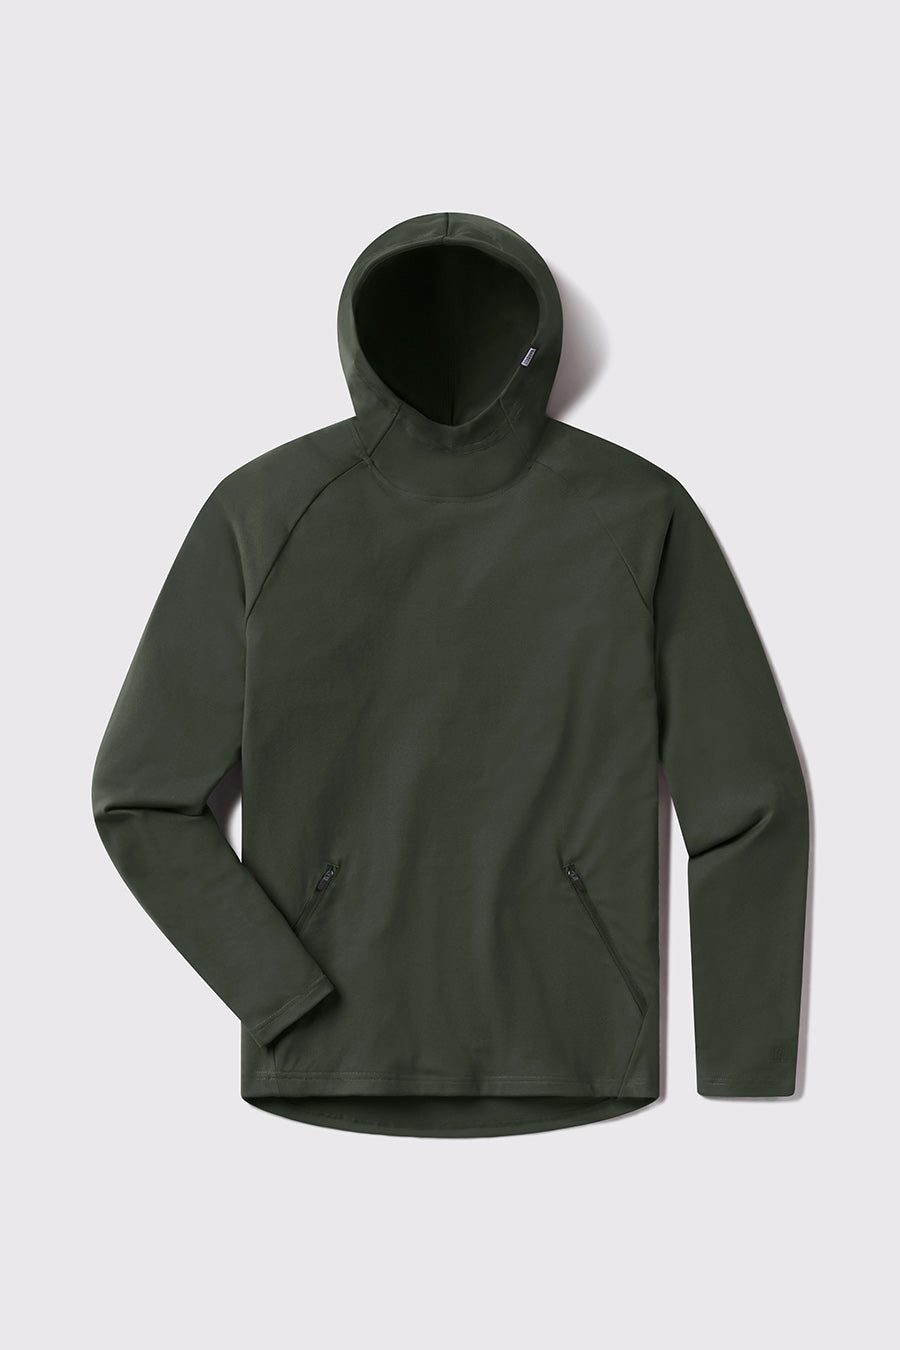 Performance fitness hoodies / jackets - PHANTOM ATHLETICS